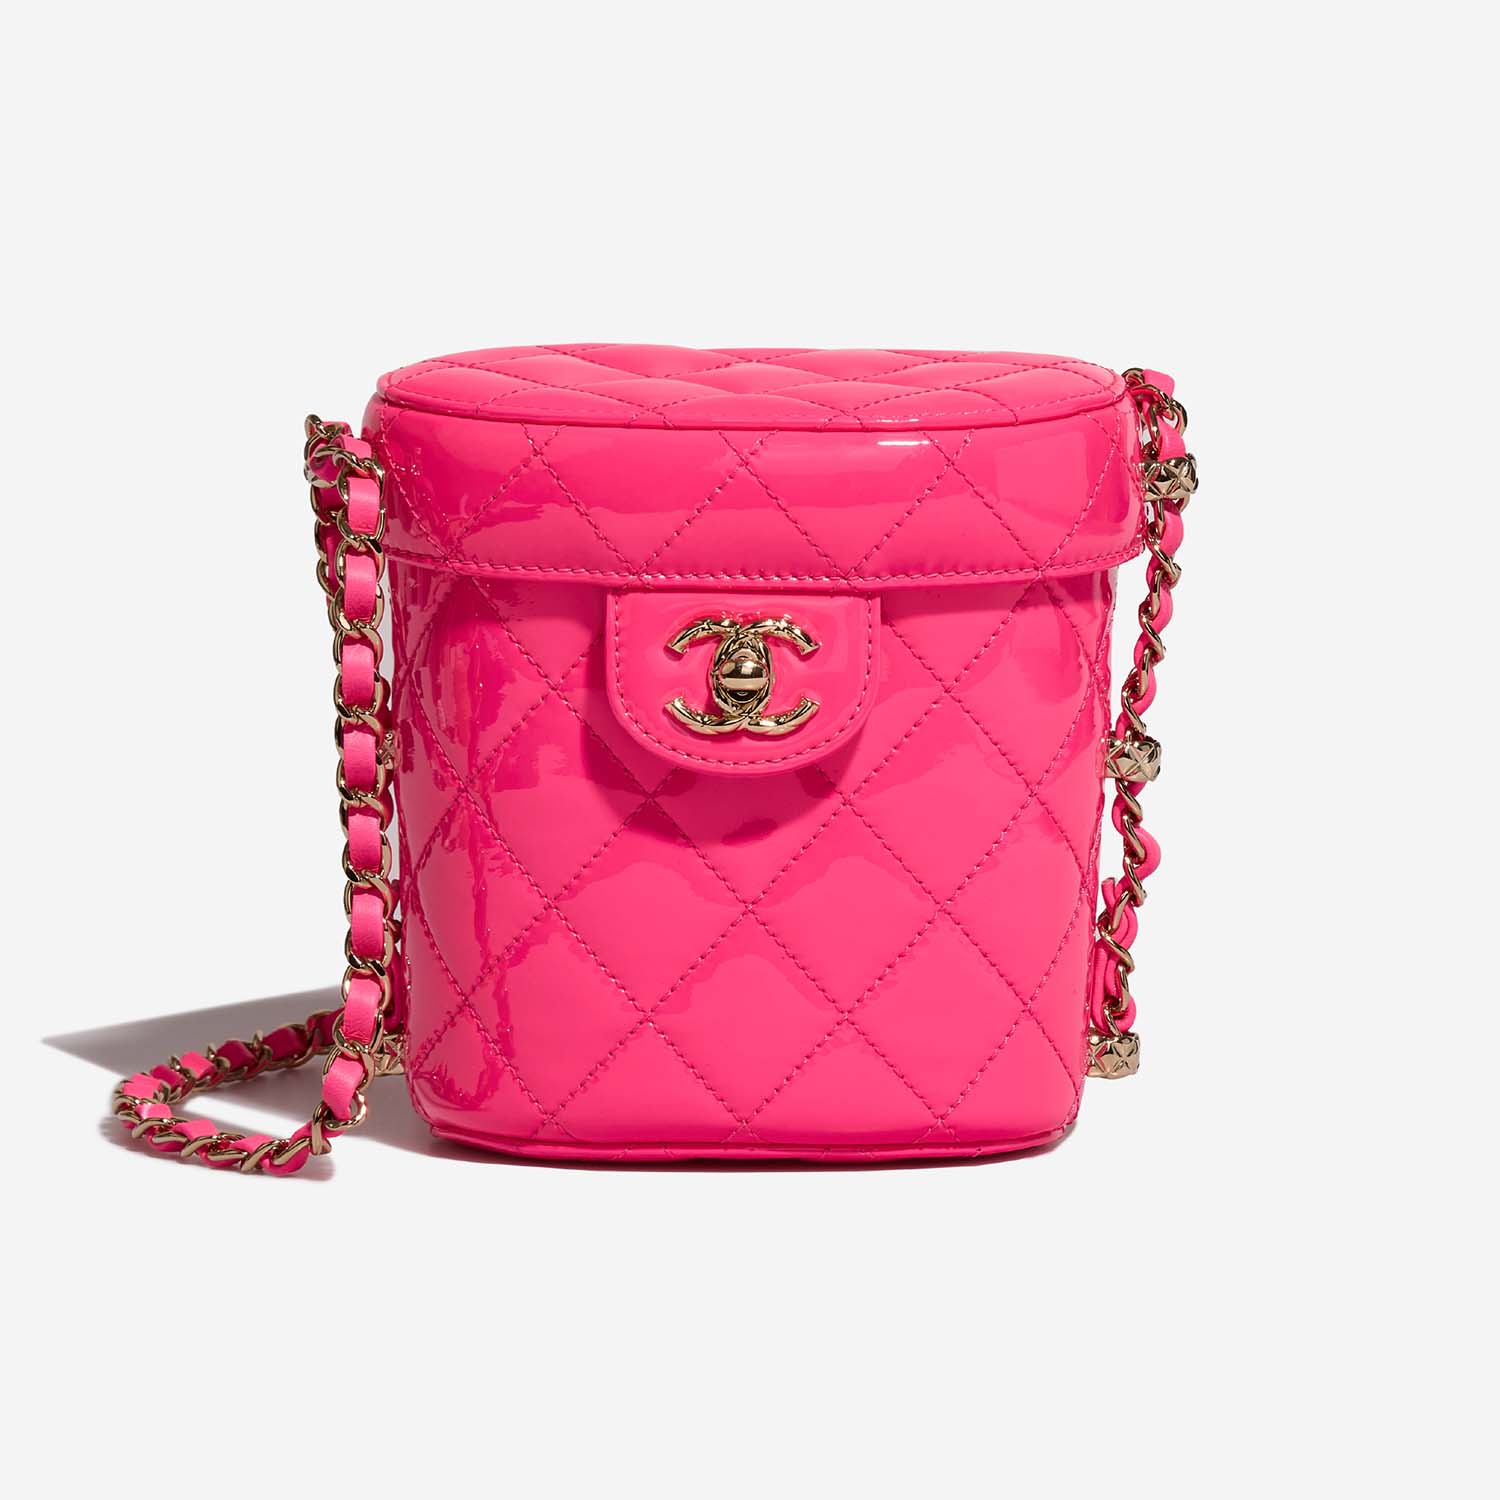 Chanel Vanity Small NeonPink 2F S | Verkaufen Sie Ihre Designer-Tasche auf Saclab.com